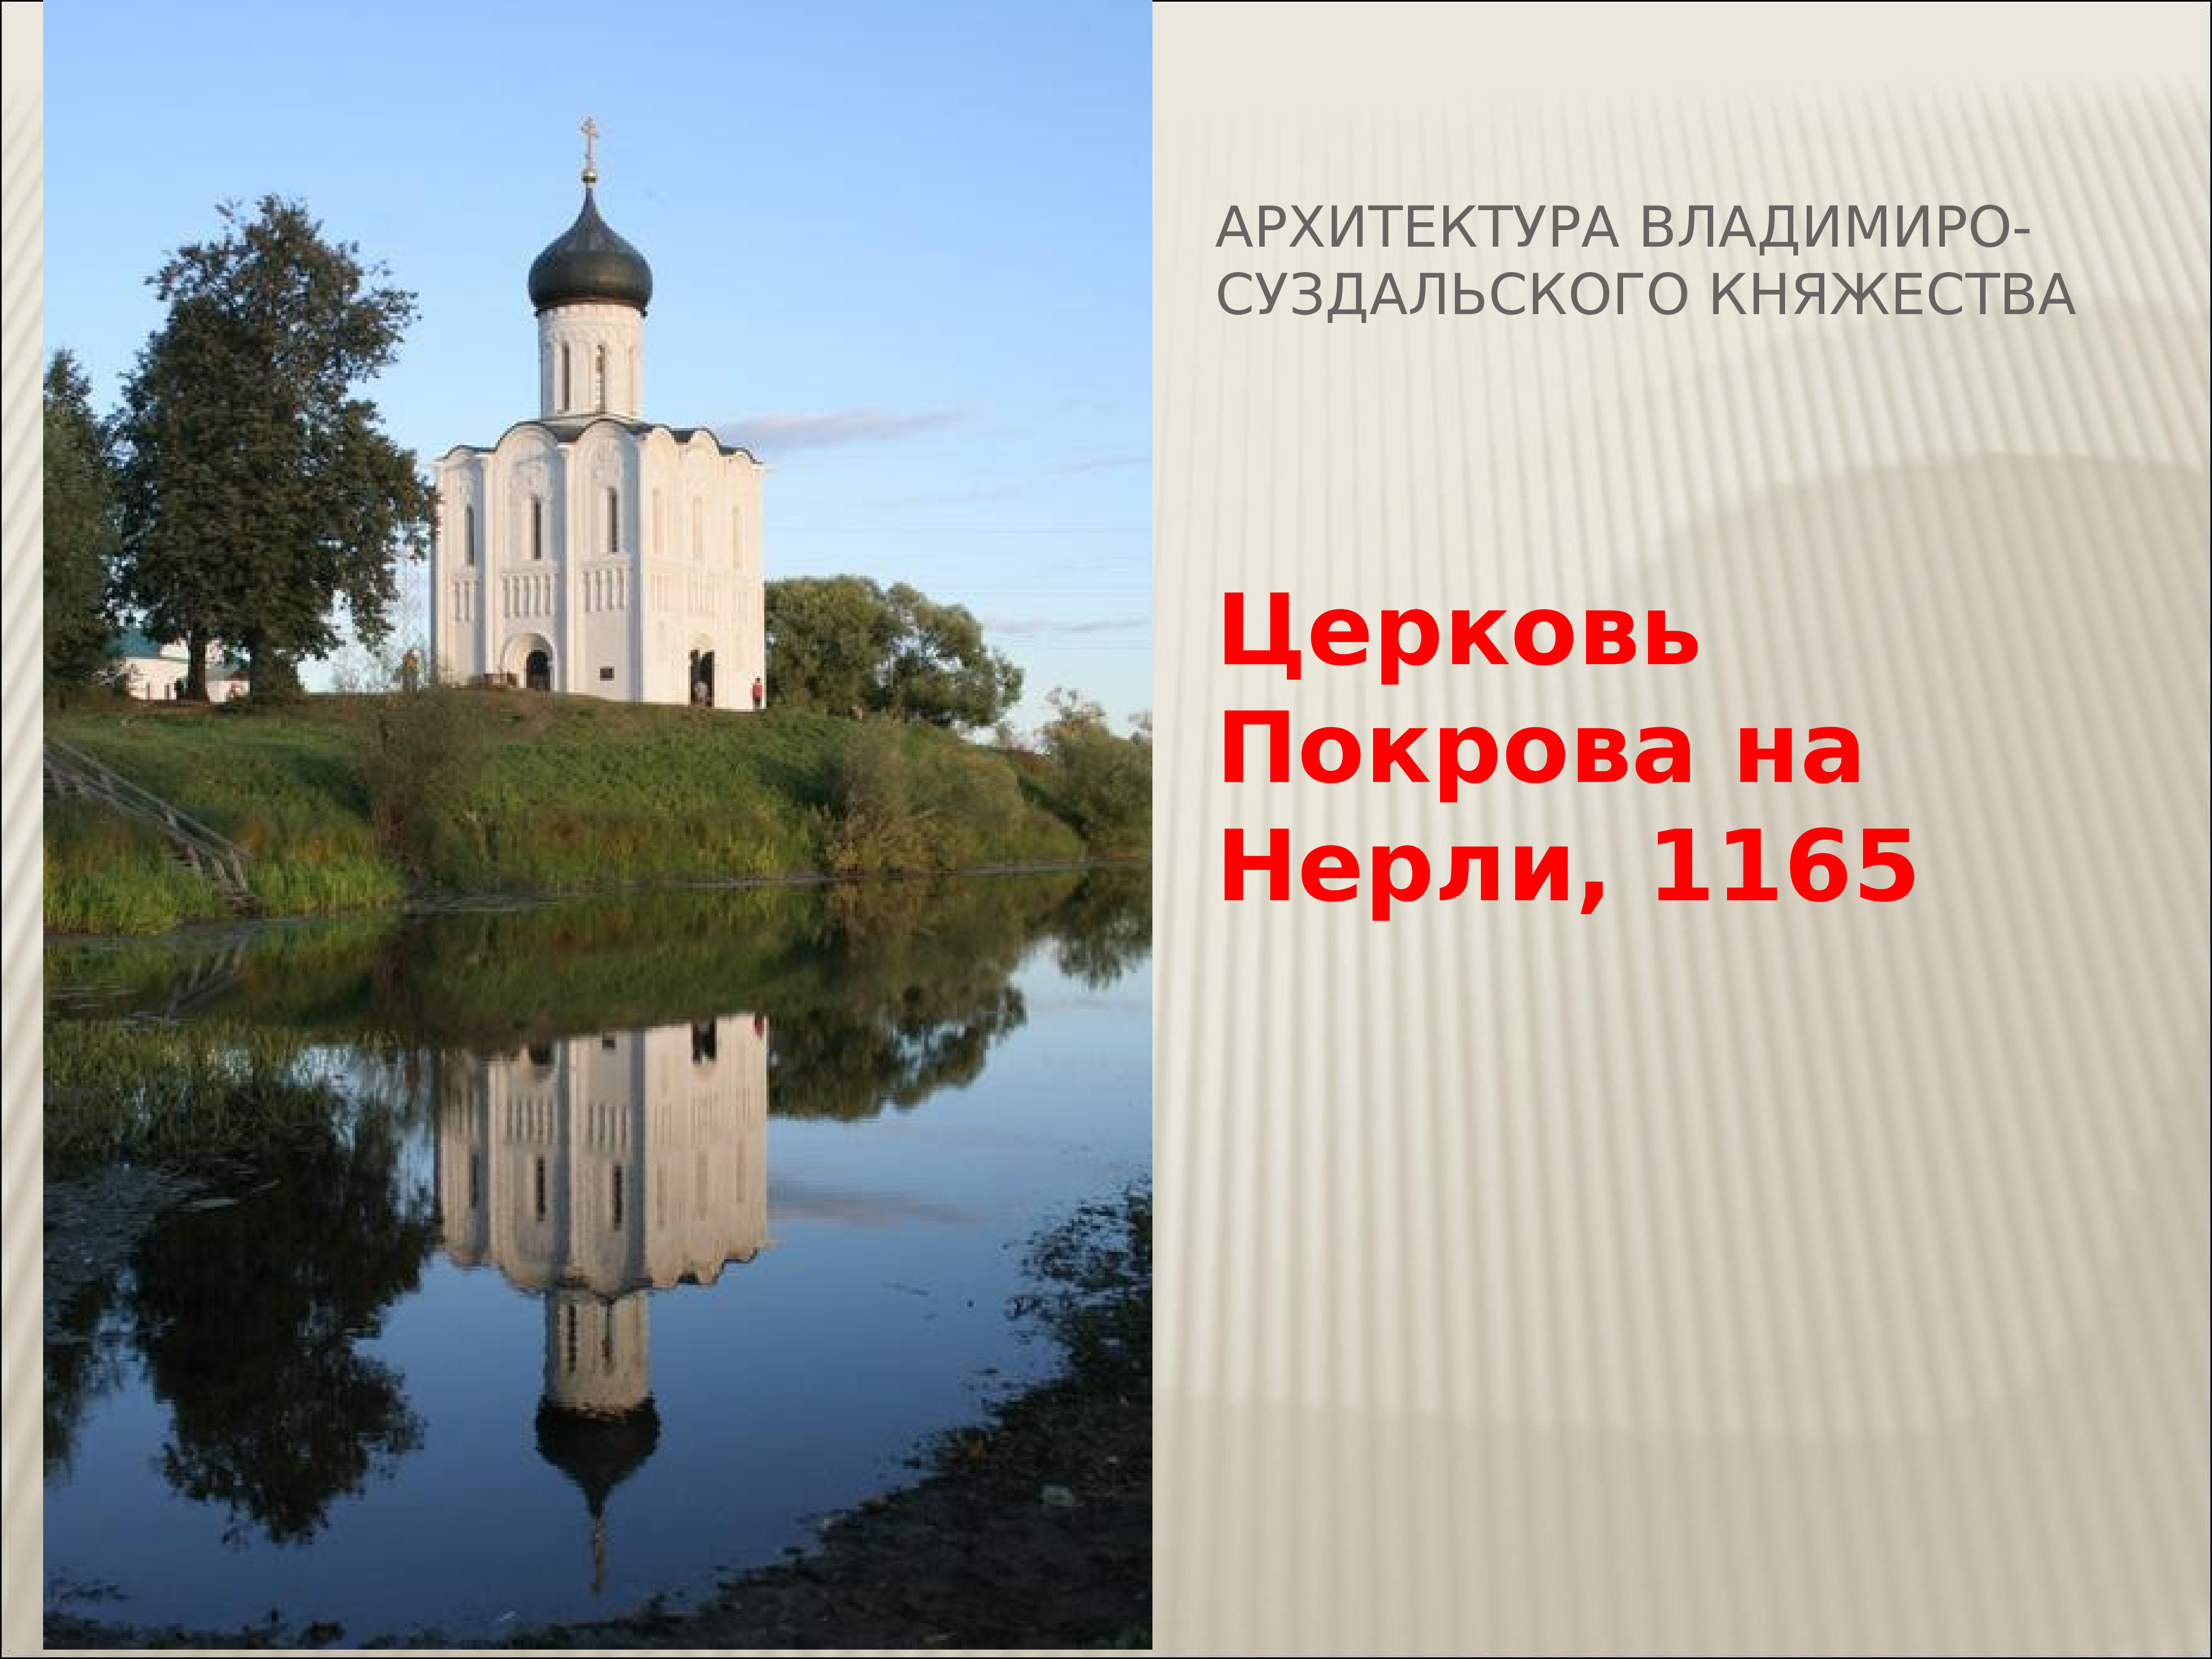 Владимиро-Суздальская архитектура 12-13 века